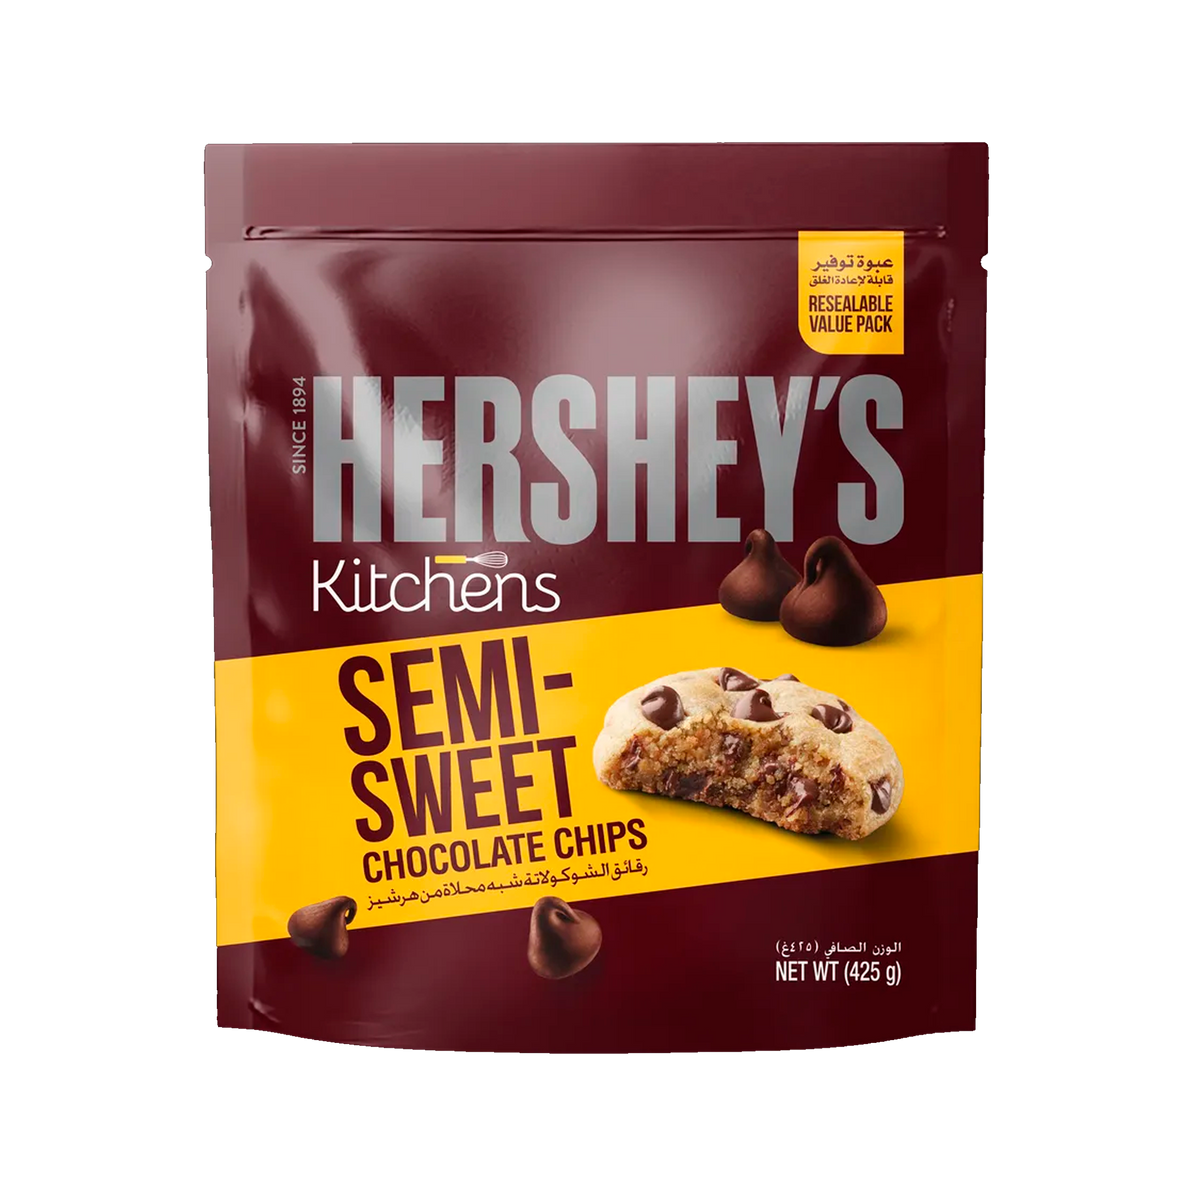 Hersheys Kitchens Semi Sweet Chocolate Chips 425g